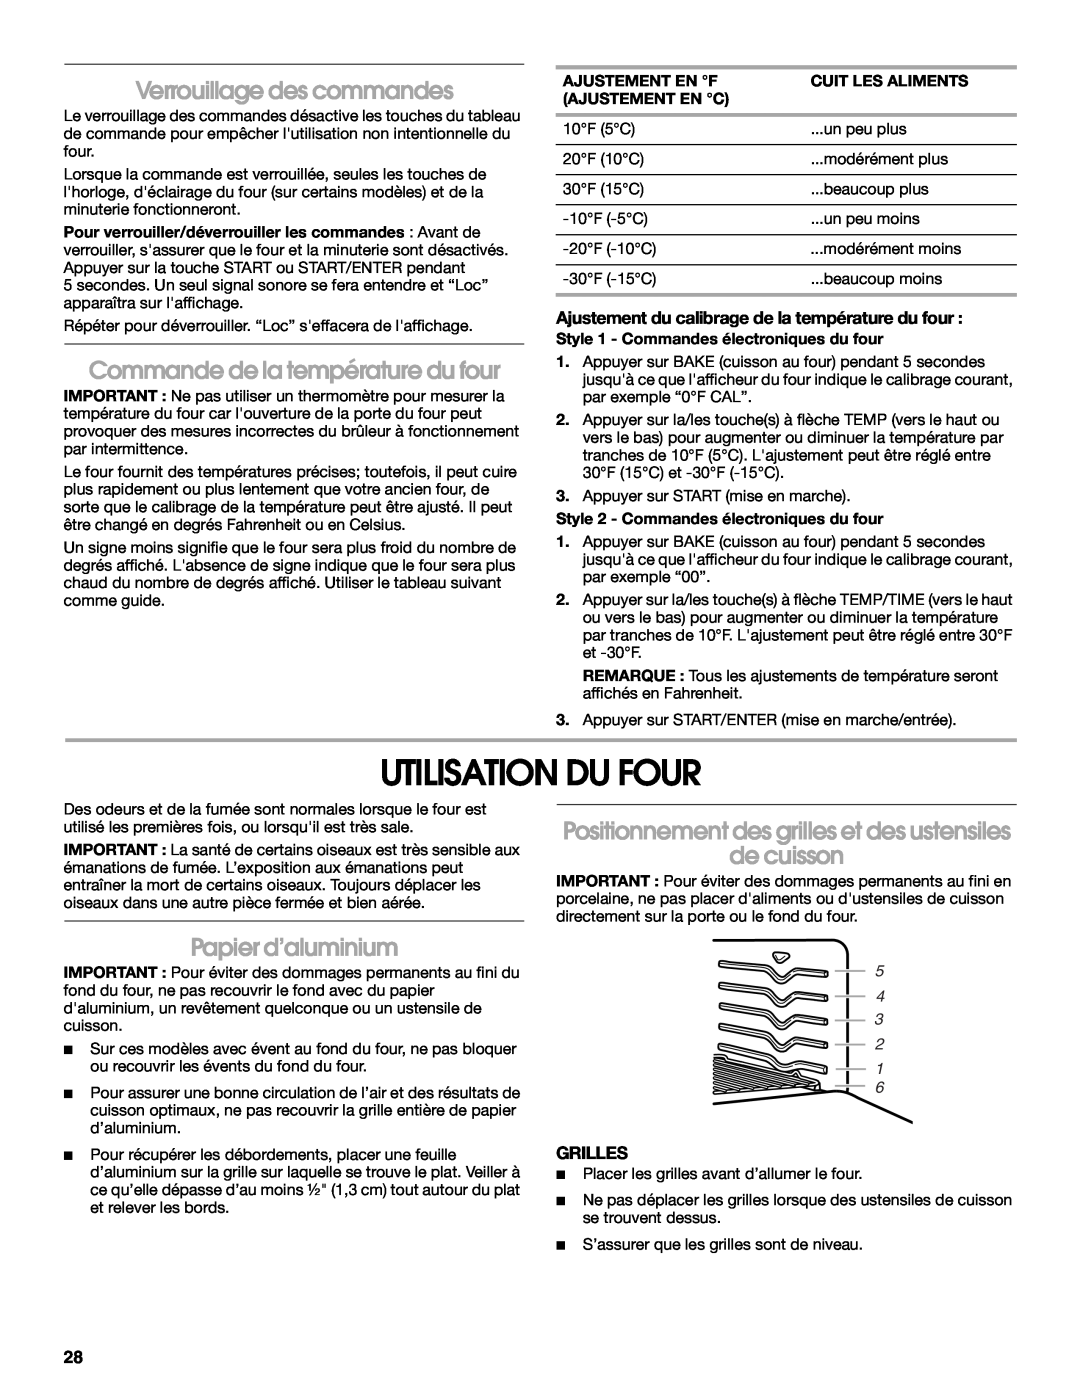 IKEA Range manual Utilisation Du Four, Verrouillage des commandes, Commande de la température du four, Papier d’aluminium 